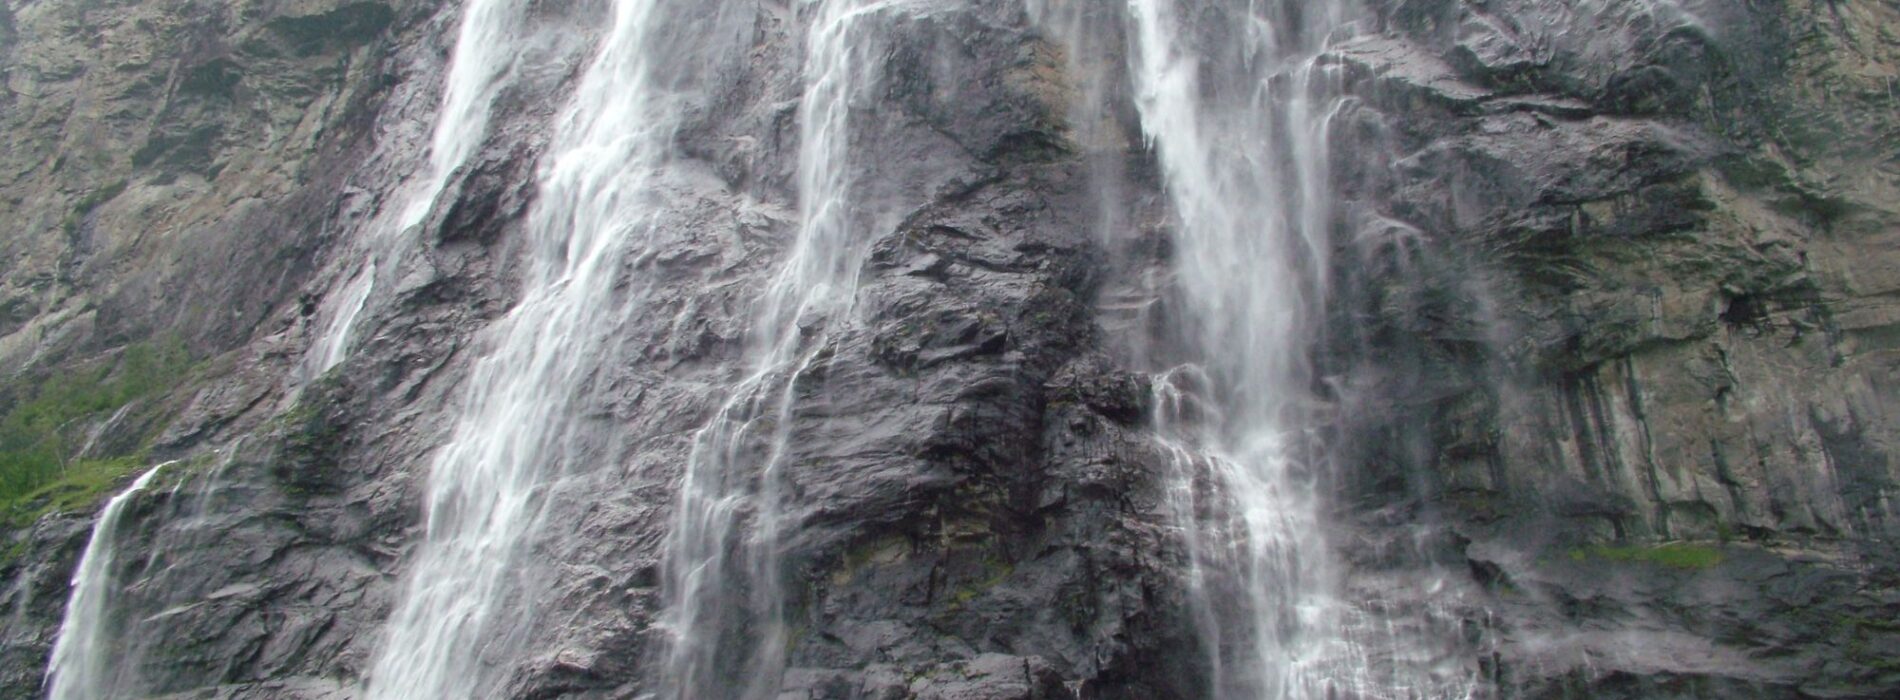 Geiranger-watervallen-2000-1200-1900x700